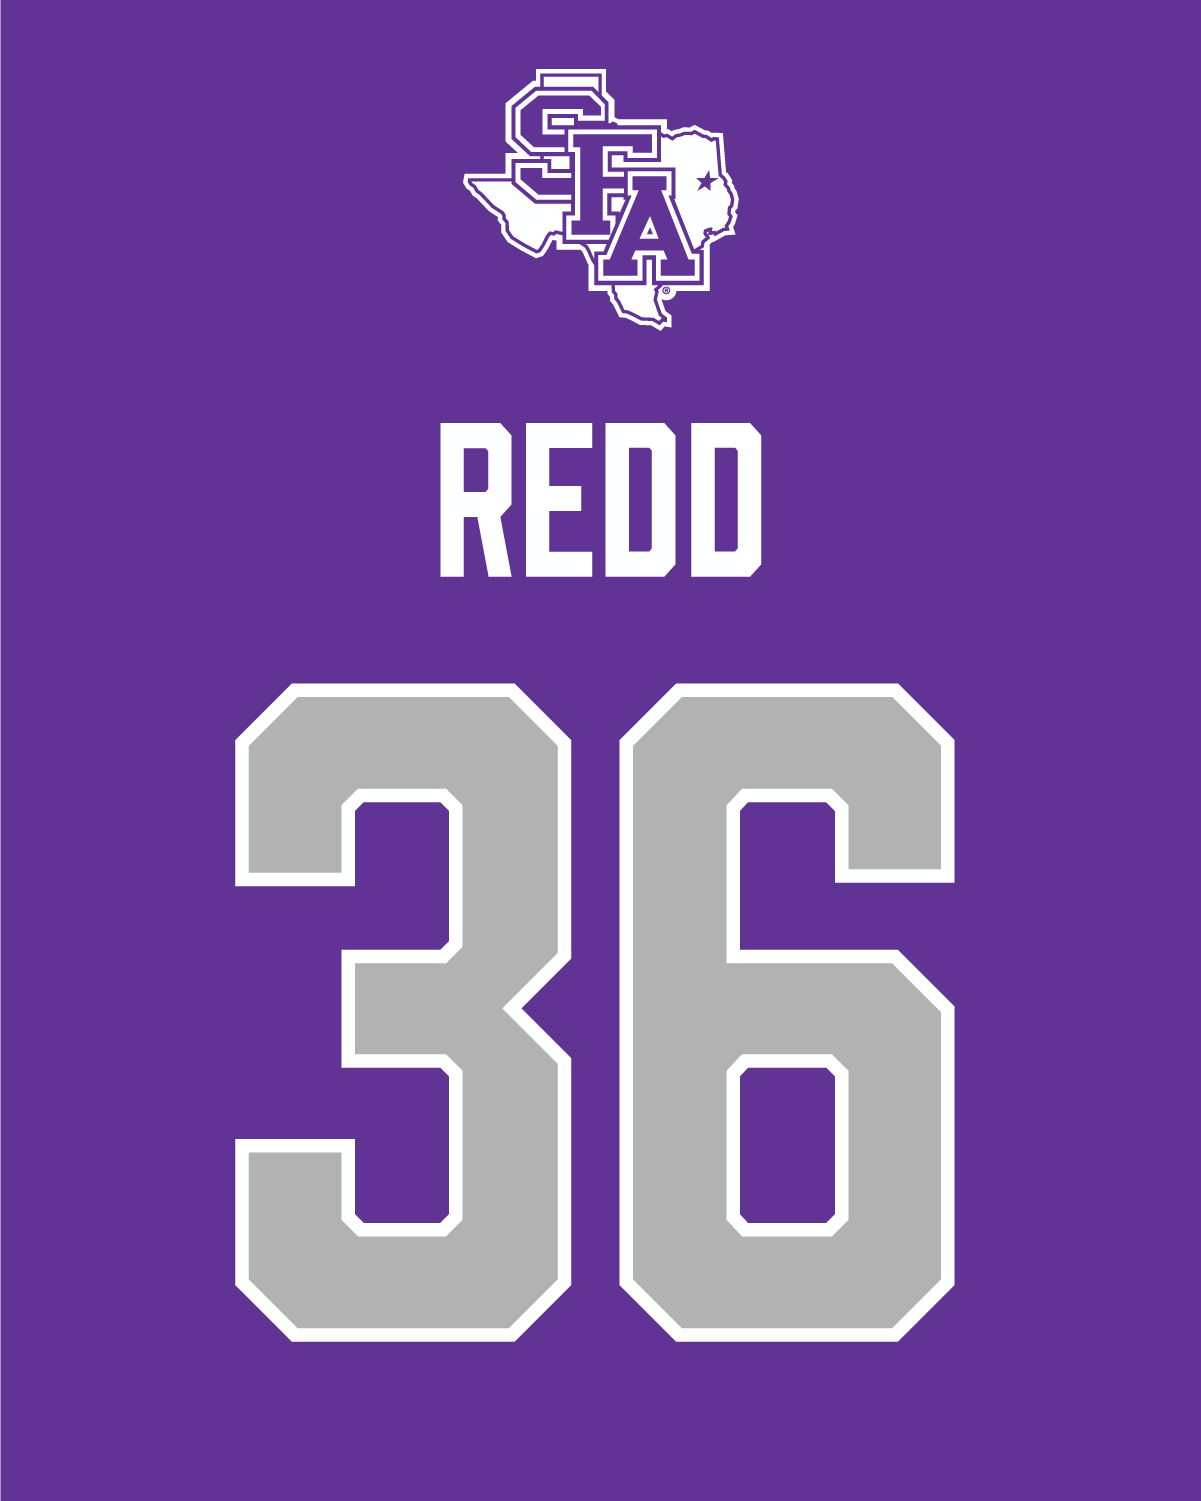 Bradley Redd | #36